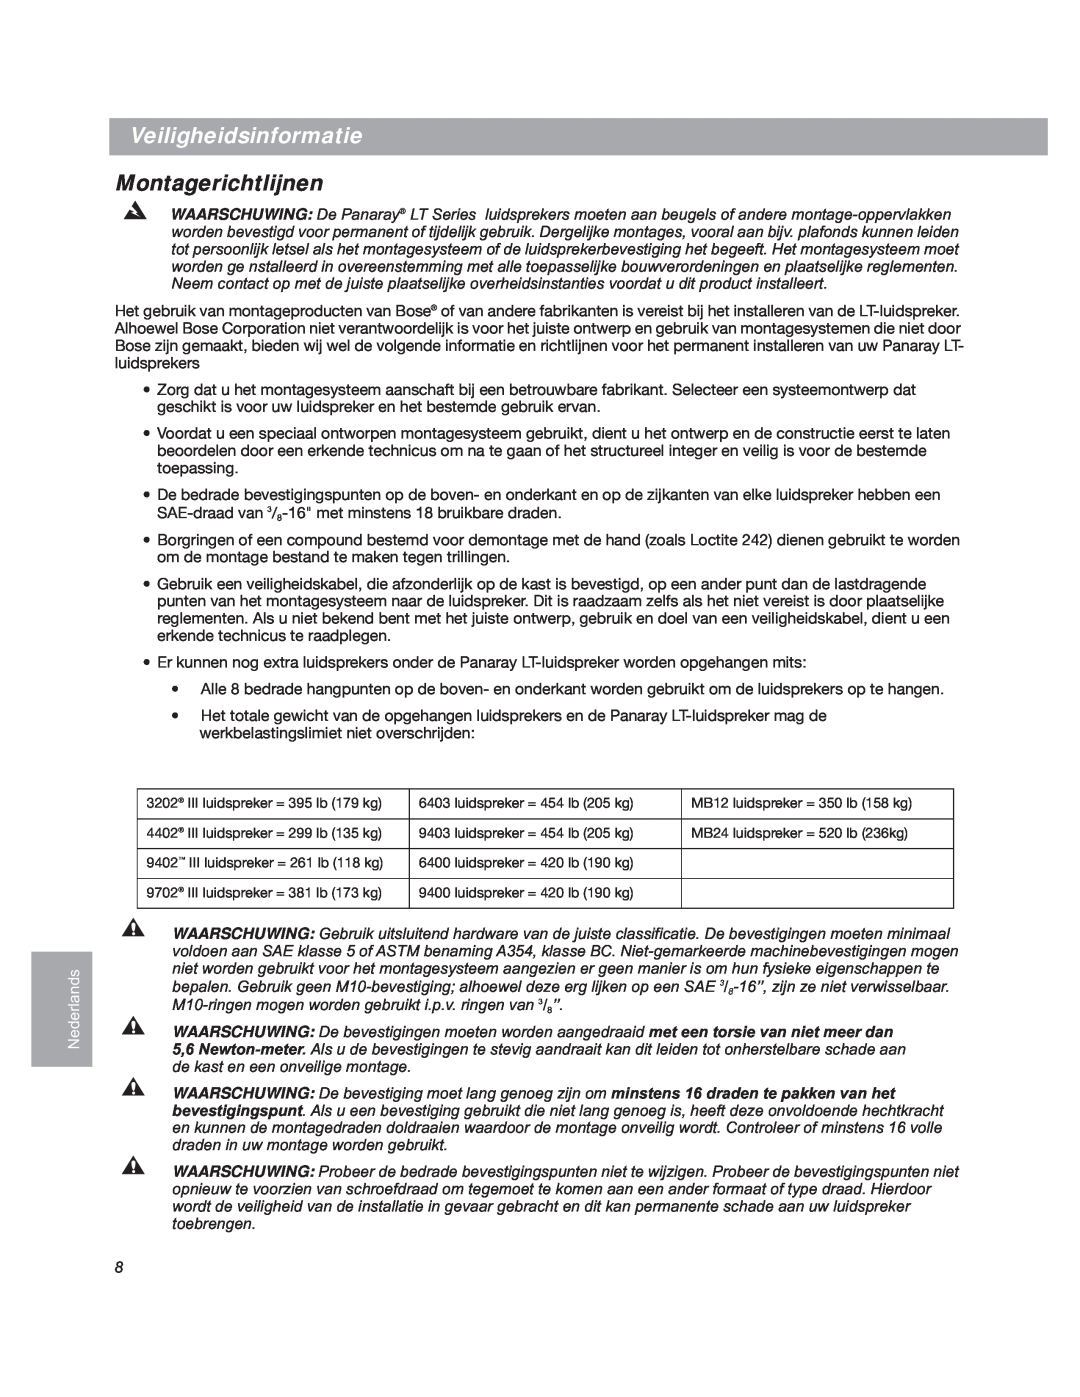 Bose LT3202 manual Veiligheidsinformatie, Montagerichtlijnen, Nederlands 